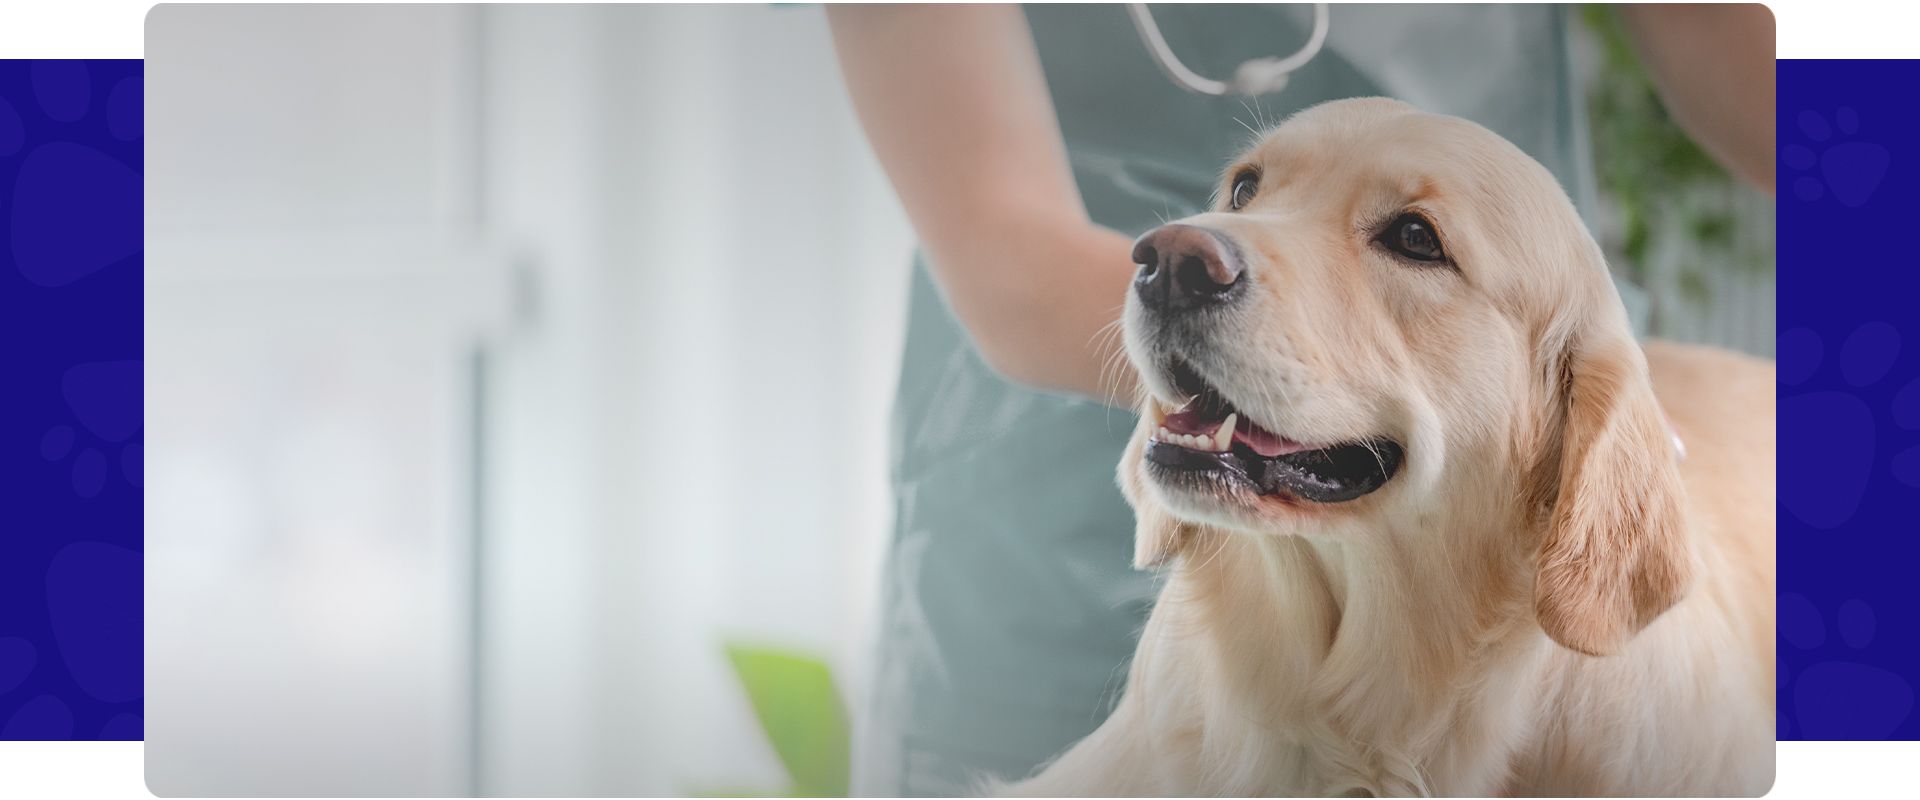 smiling golden retriever dog at the vet